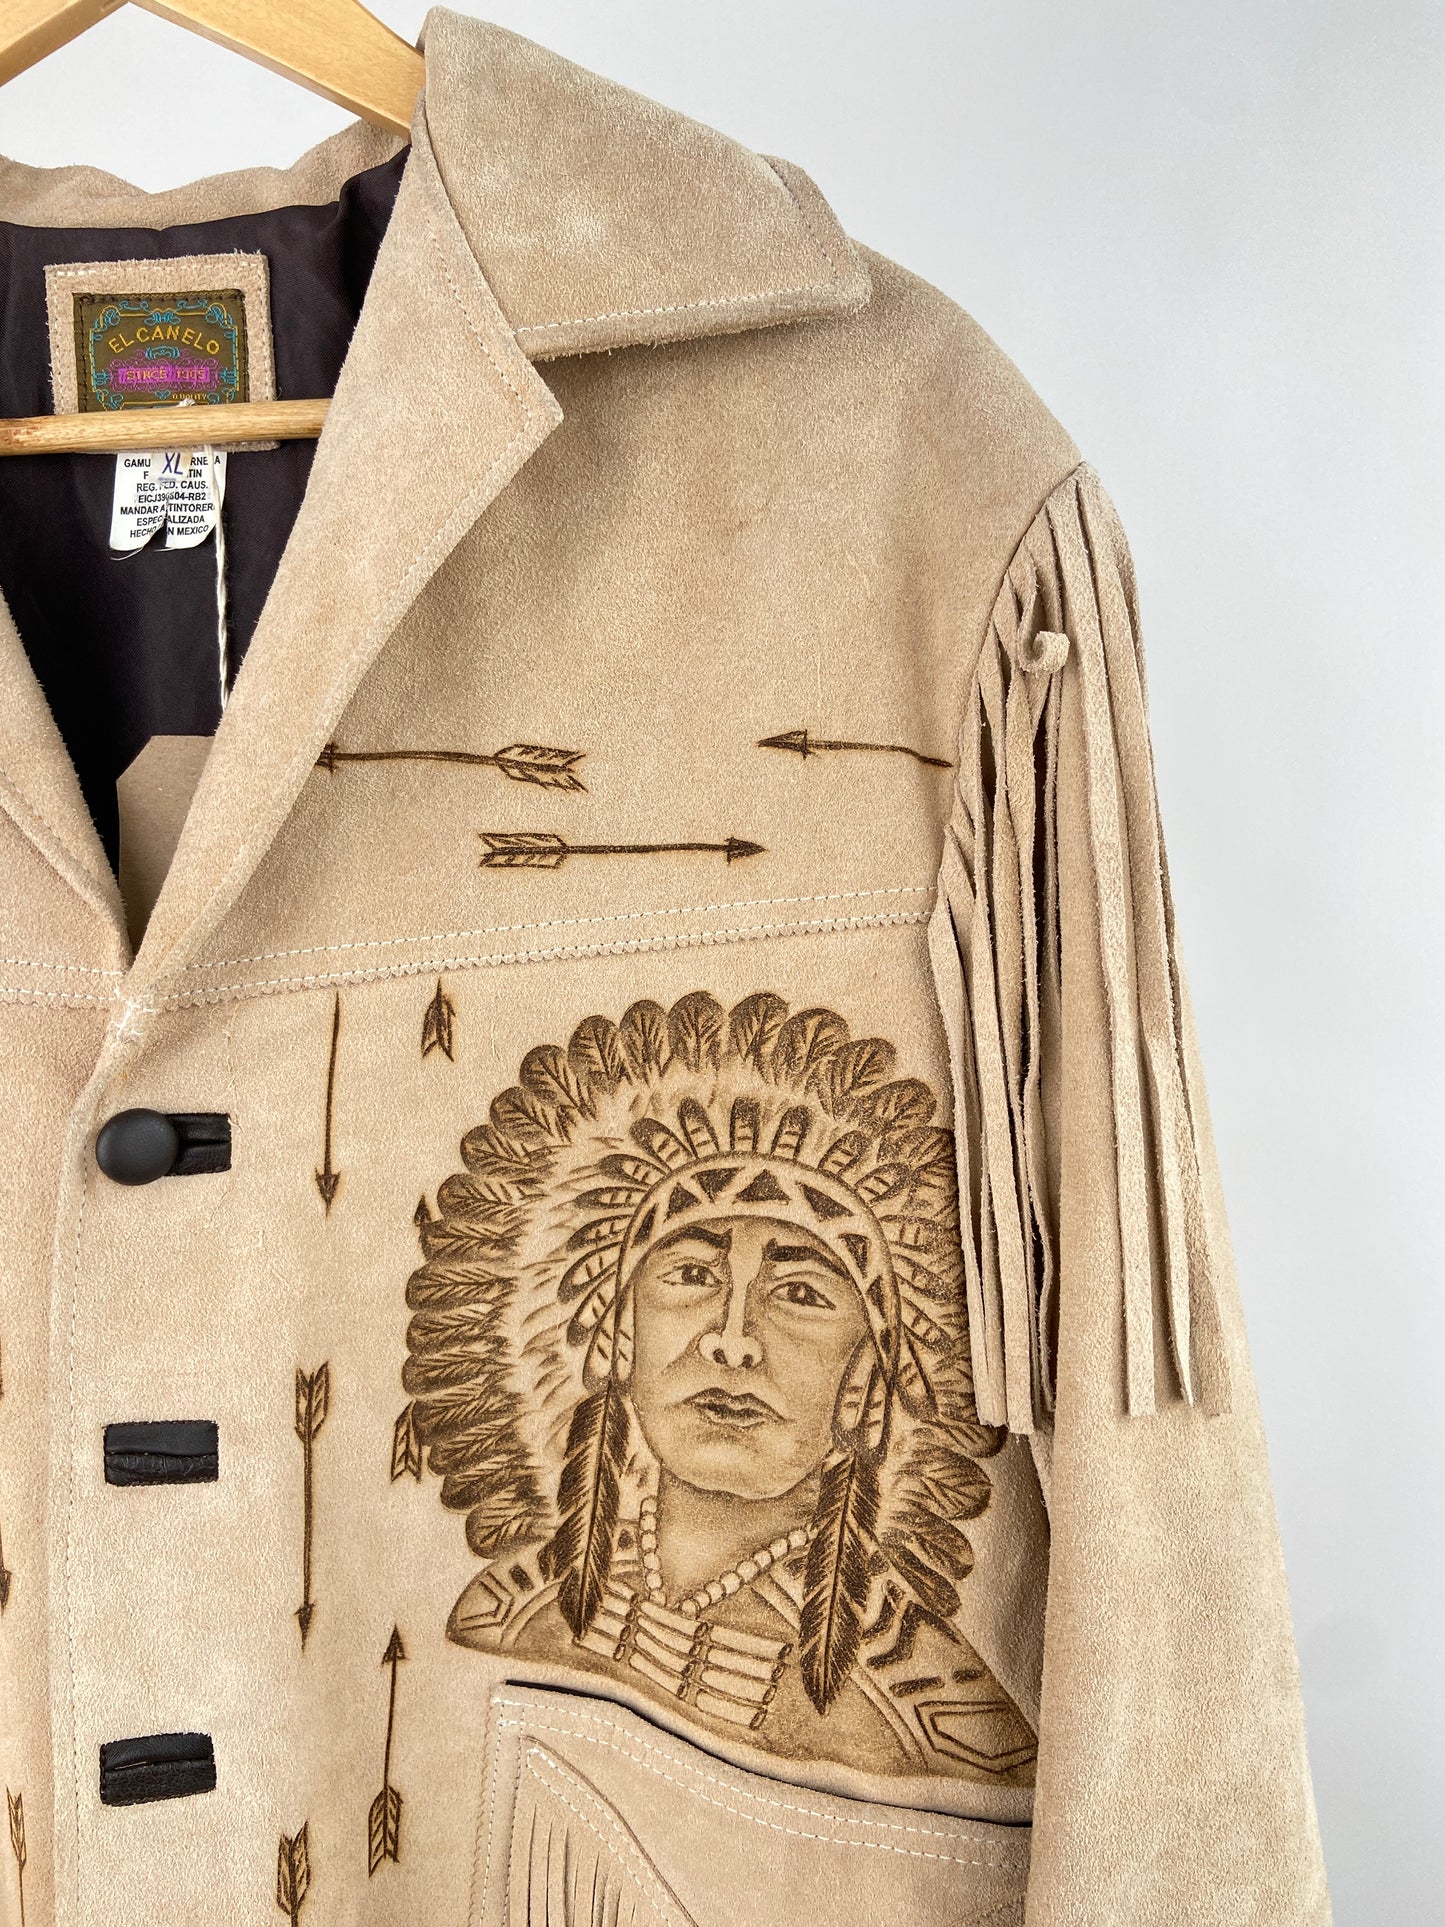 Vintage Western 70s Leather Tassel Jacket